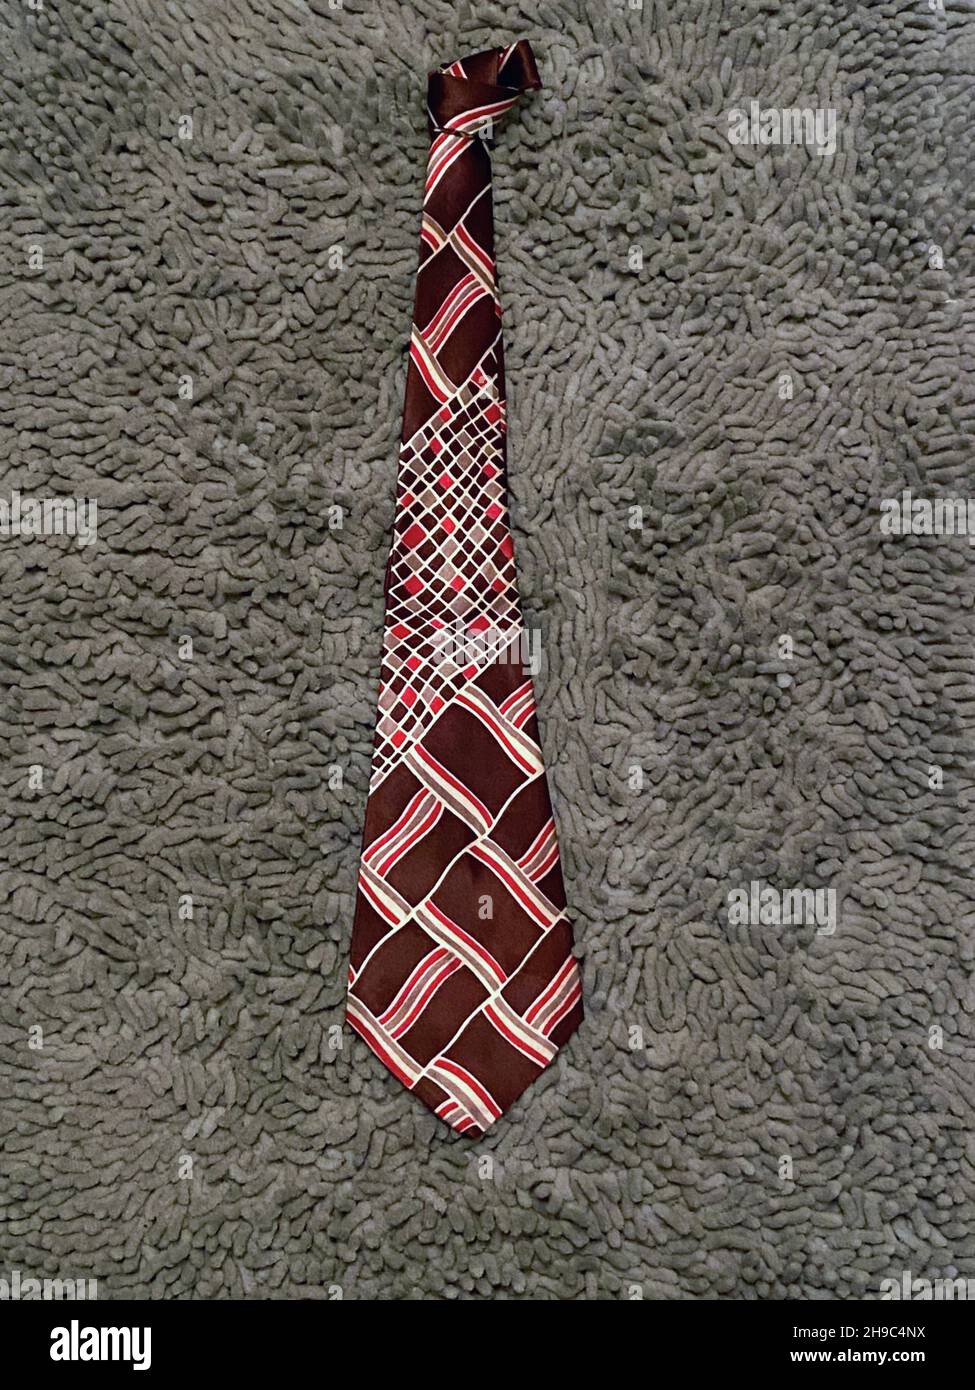 Eine braune und rote Arrow Marke Art Deco Krawatte mit einem schönen historischen Design. Wahrscheinlich aus den 1940s oder vielleicht aus den 1930er Jahren. Stockfoto